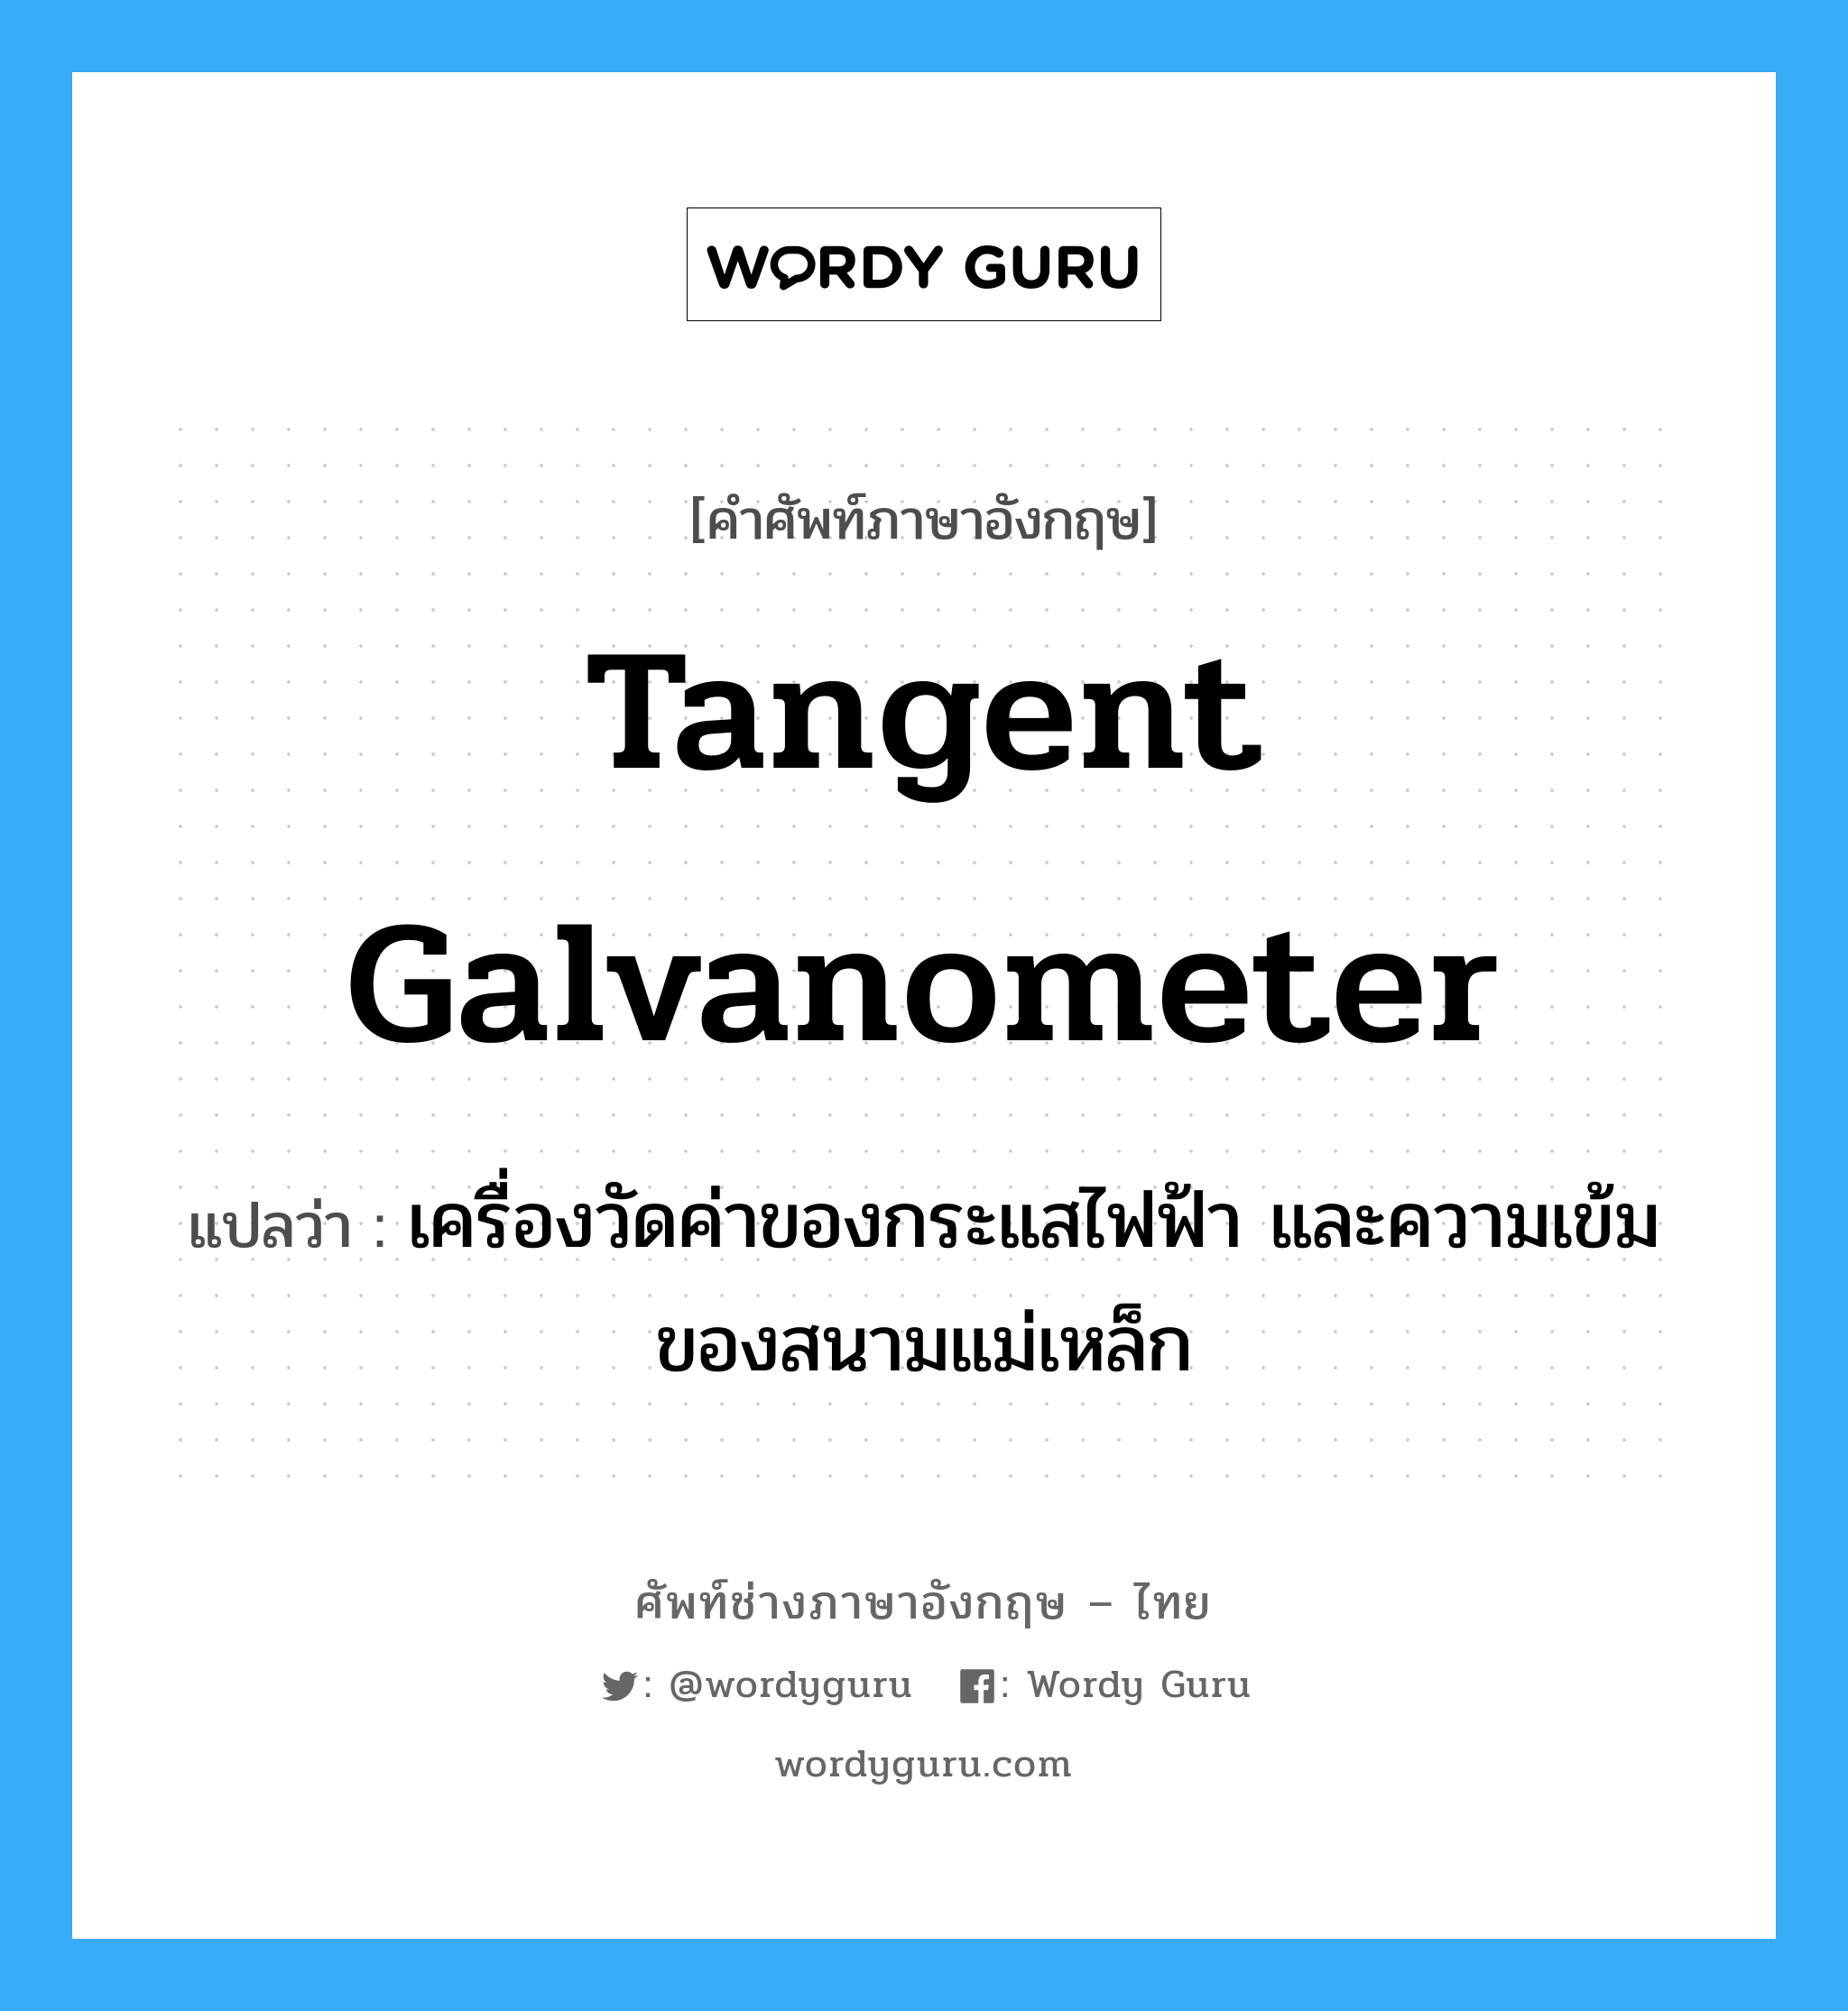 tangent galvanometer แปลว่า?, คำศัพท์ช่างภาษาอังกฤษ - ไทย tangent galvanometer คำศัพท์ภาษาอังกฤษ tangent galvanometer แปลว่า เครื่องวัดค่าของกระแสไฟฟ้า และความเข้มของสนามแม่เหล็ก